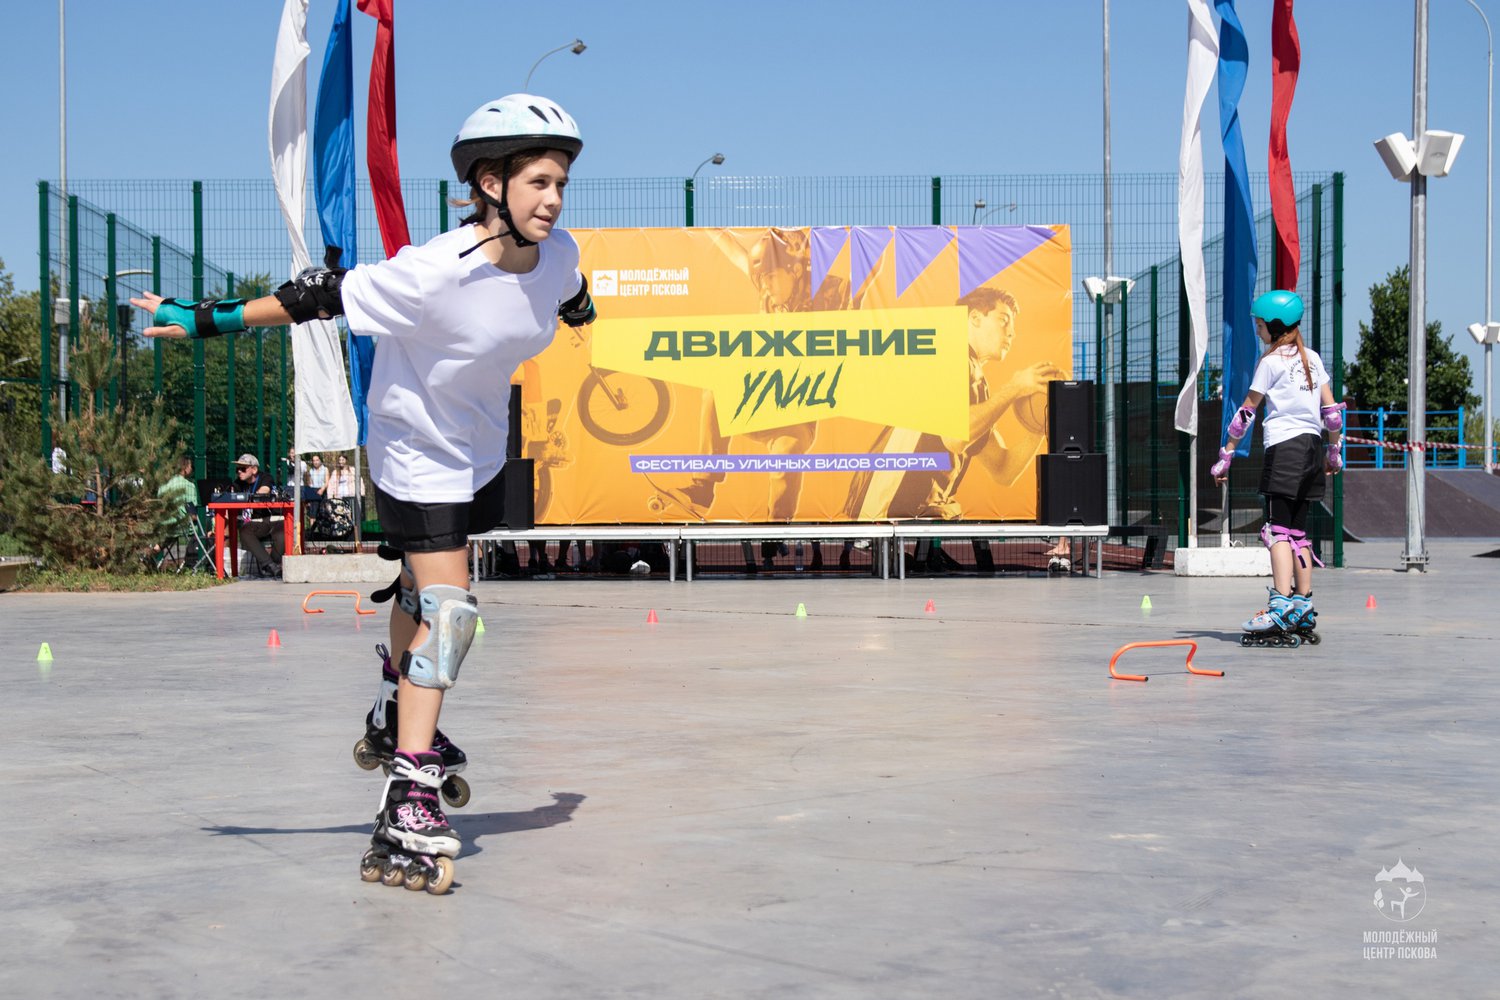 Фестиваль уличных видов спорта «Движение улиц» состоится в День молодёжи, 24 июня.